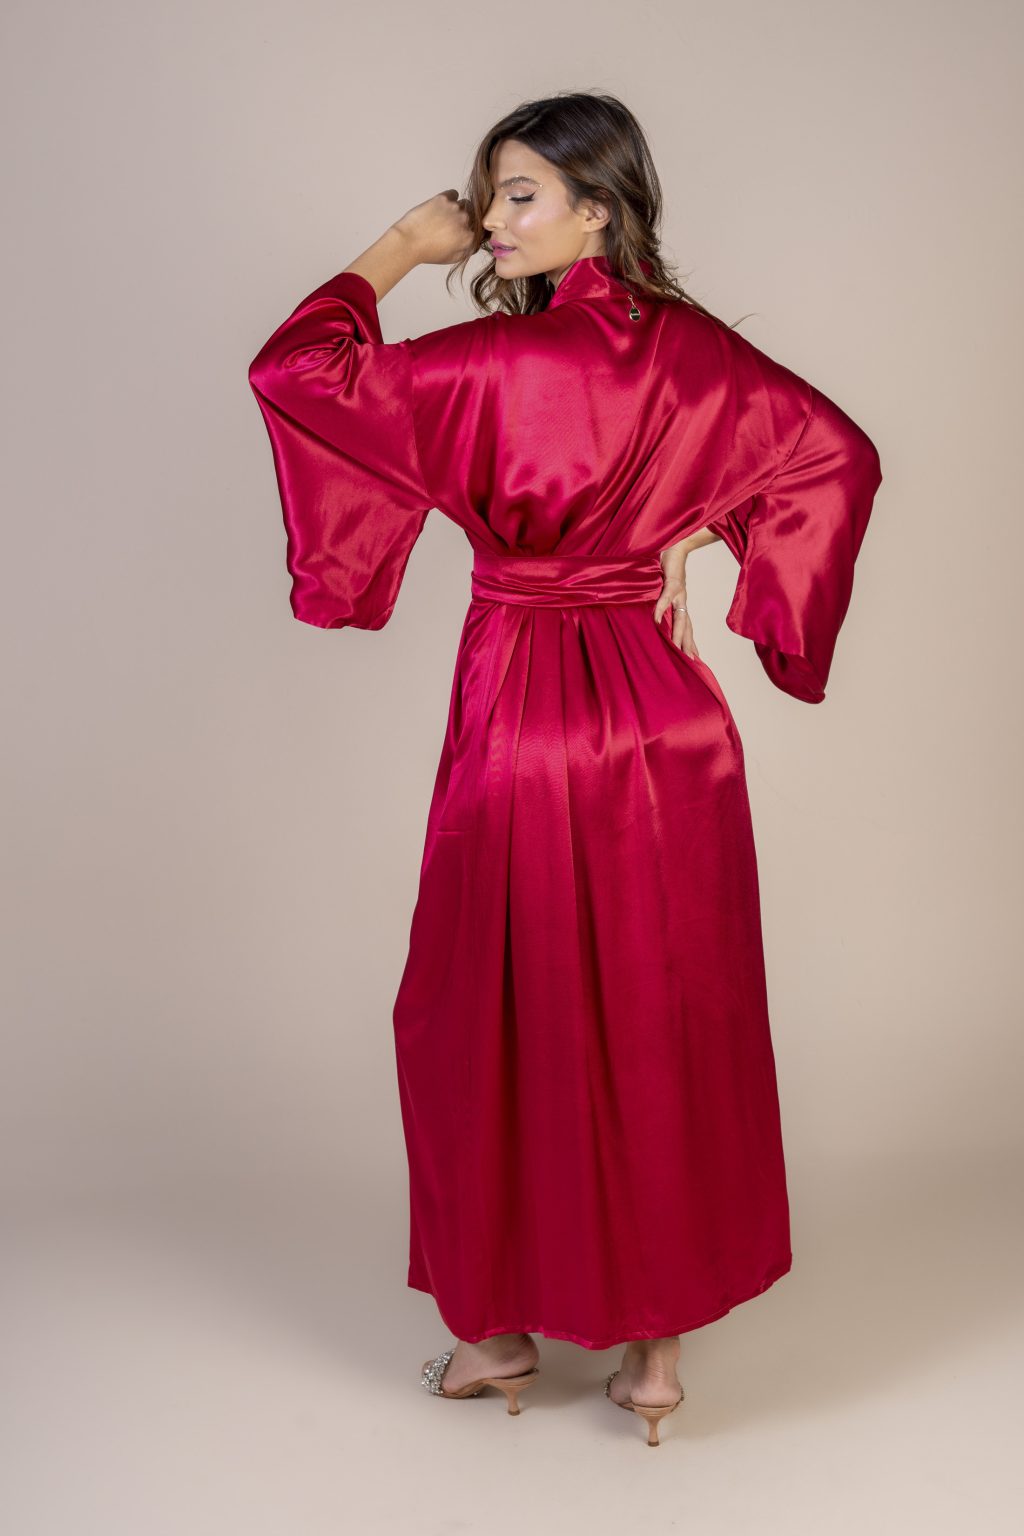 Mulher morena usando um kimono longo manga longa vermelho de viscose faixa para amarração na cintura exclusivo praticidade elegância conforto maria sanz kimono quimono